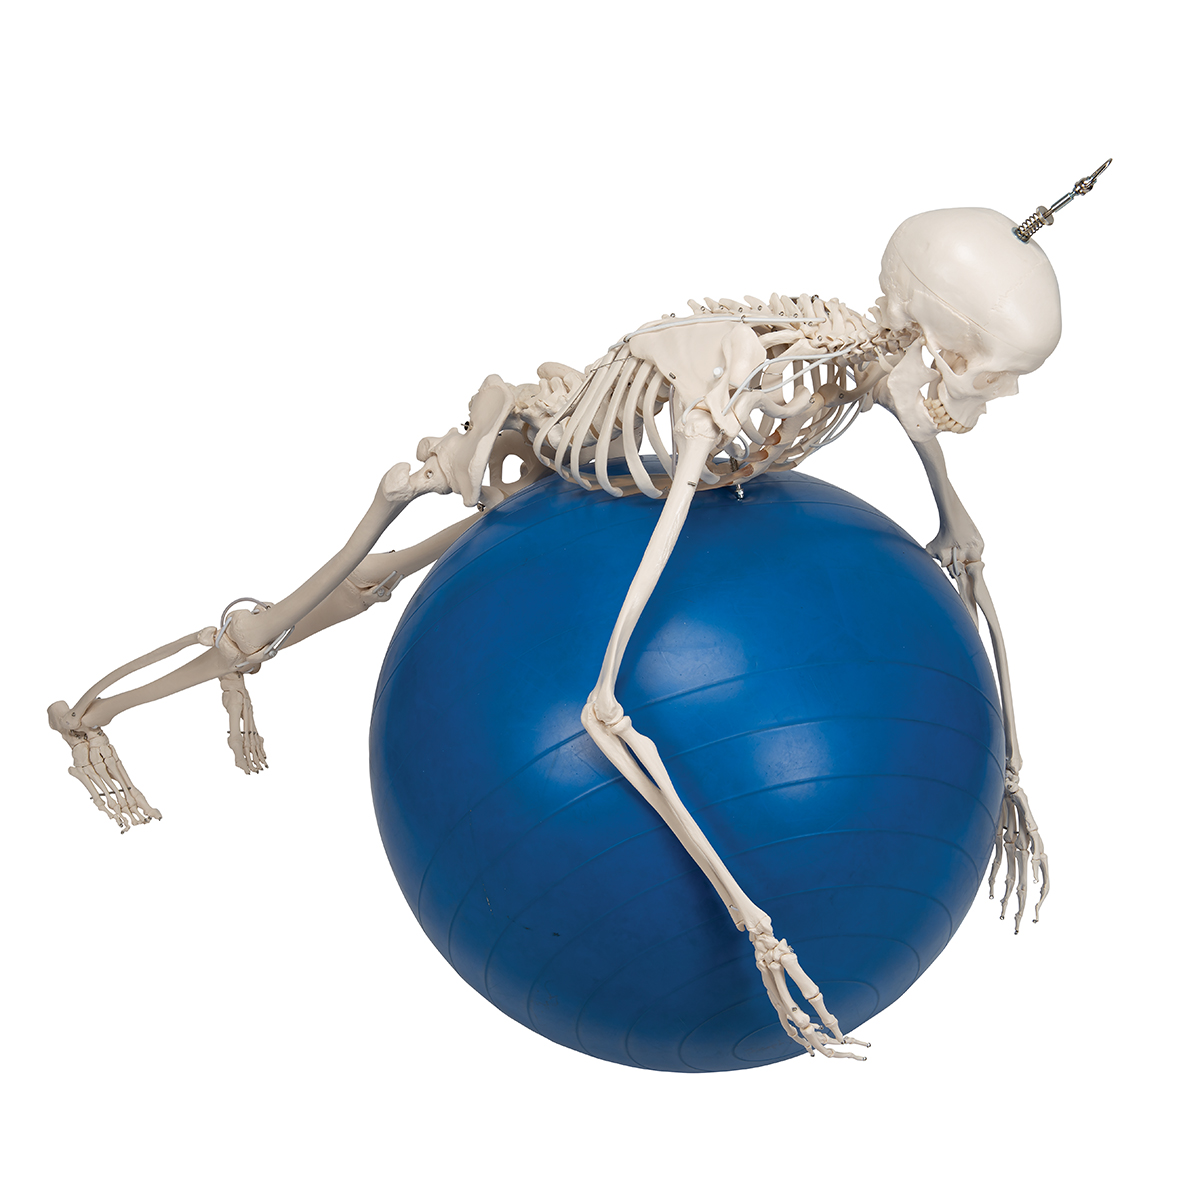 НОВИНКА // Функциональная и физиологическая модель скелета человека Фрэнка на подвесной подставке